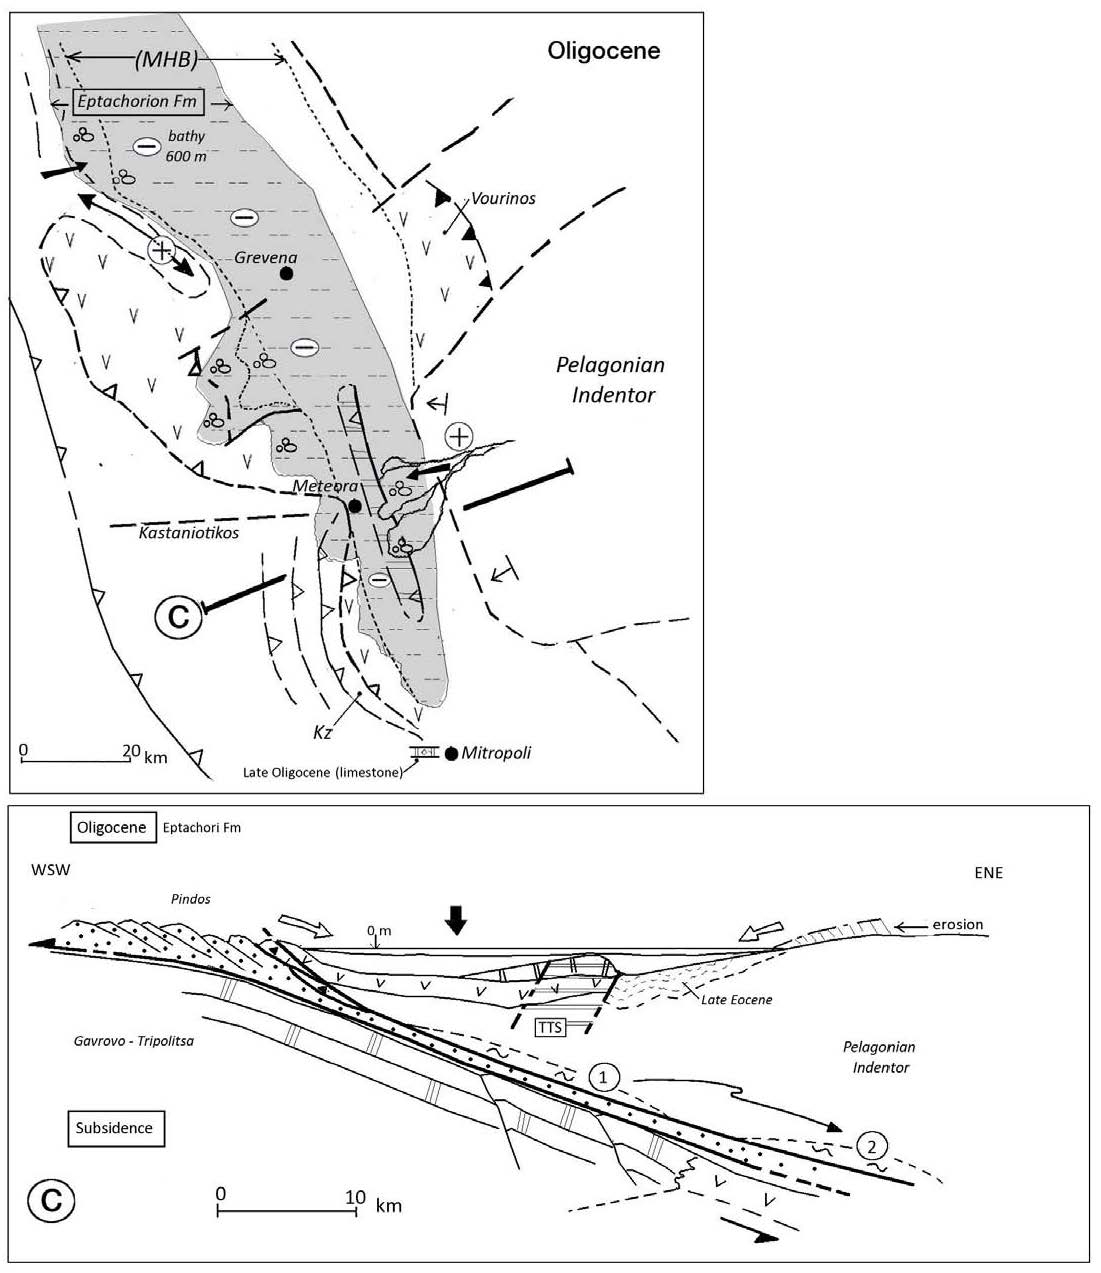 Oligocene (Eptachorion Formation)